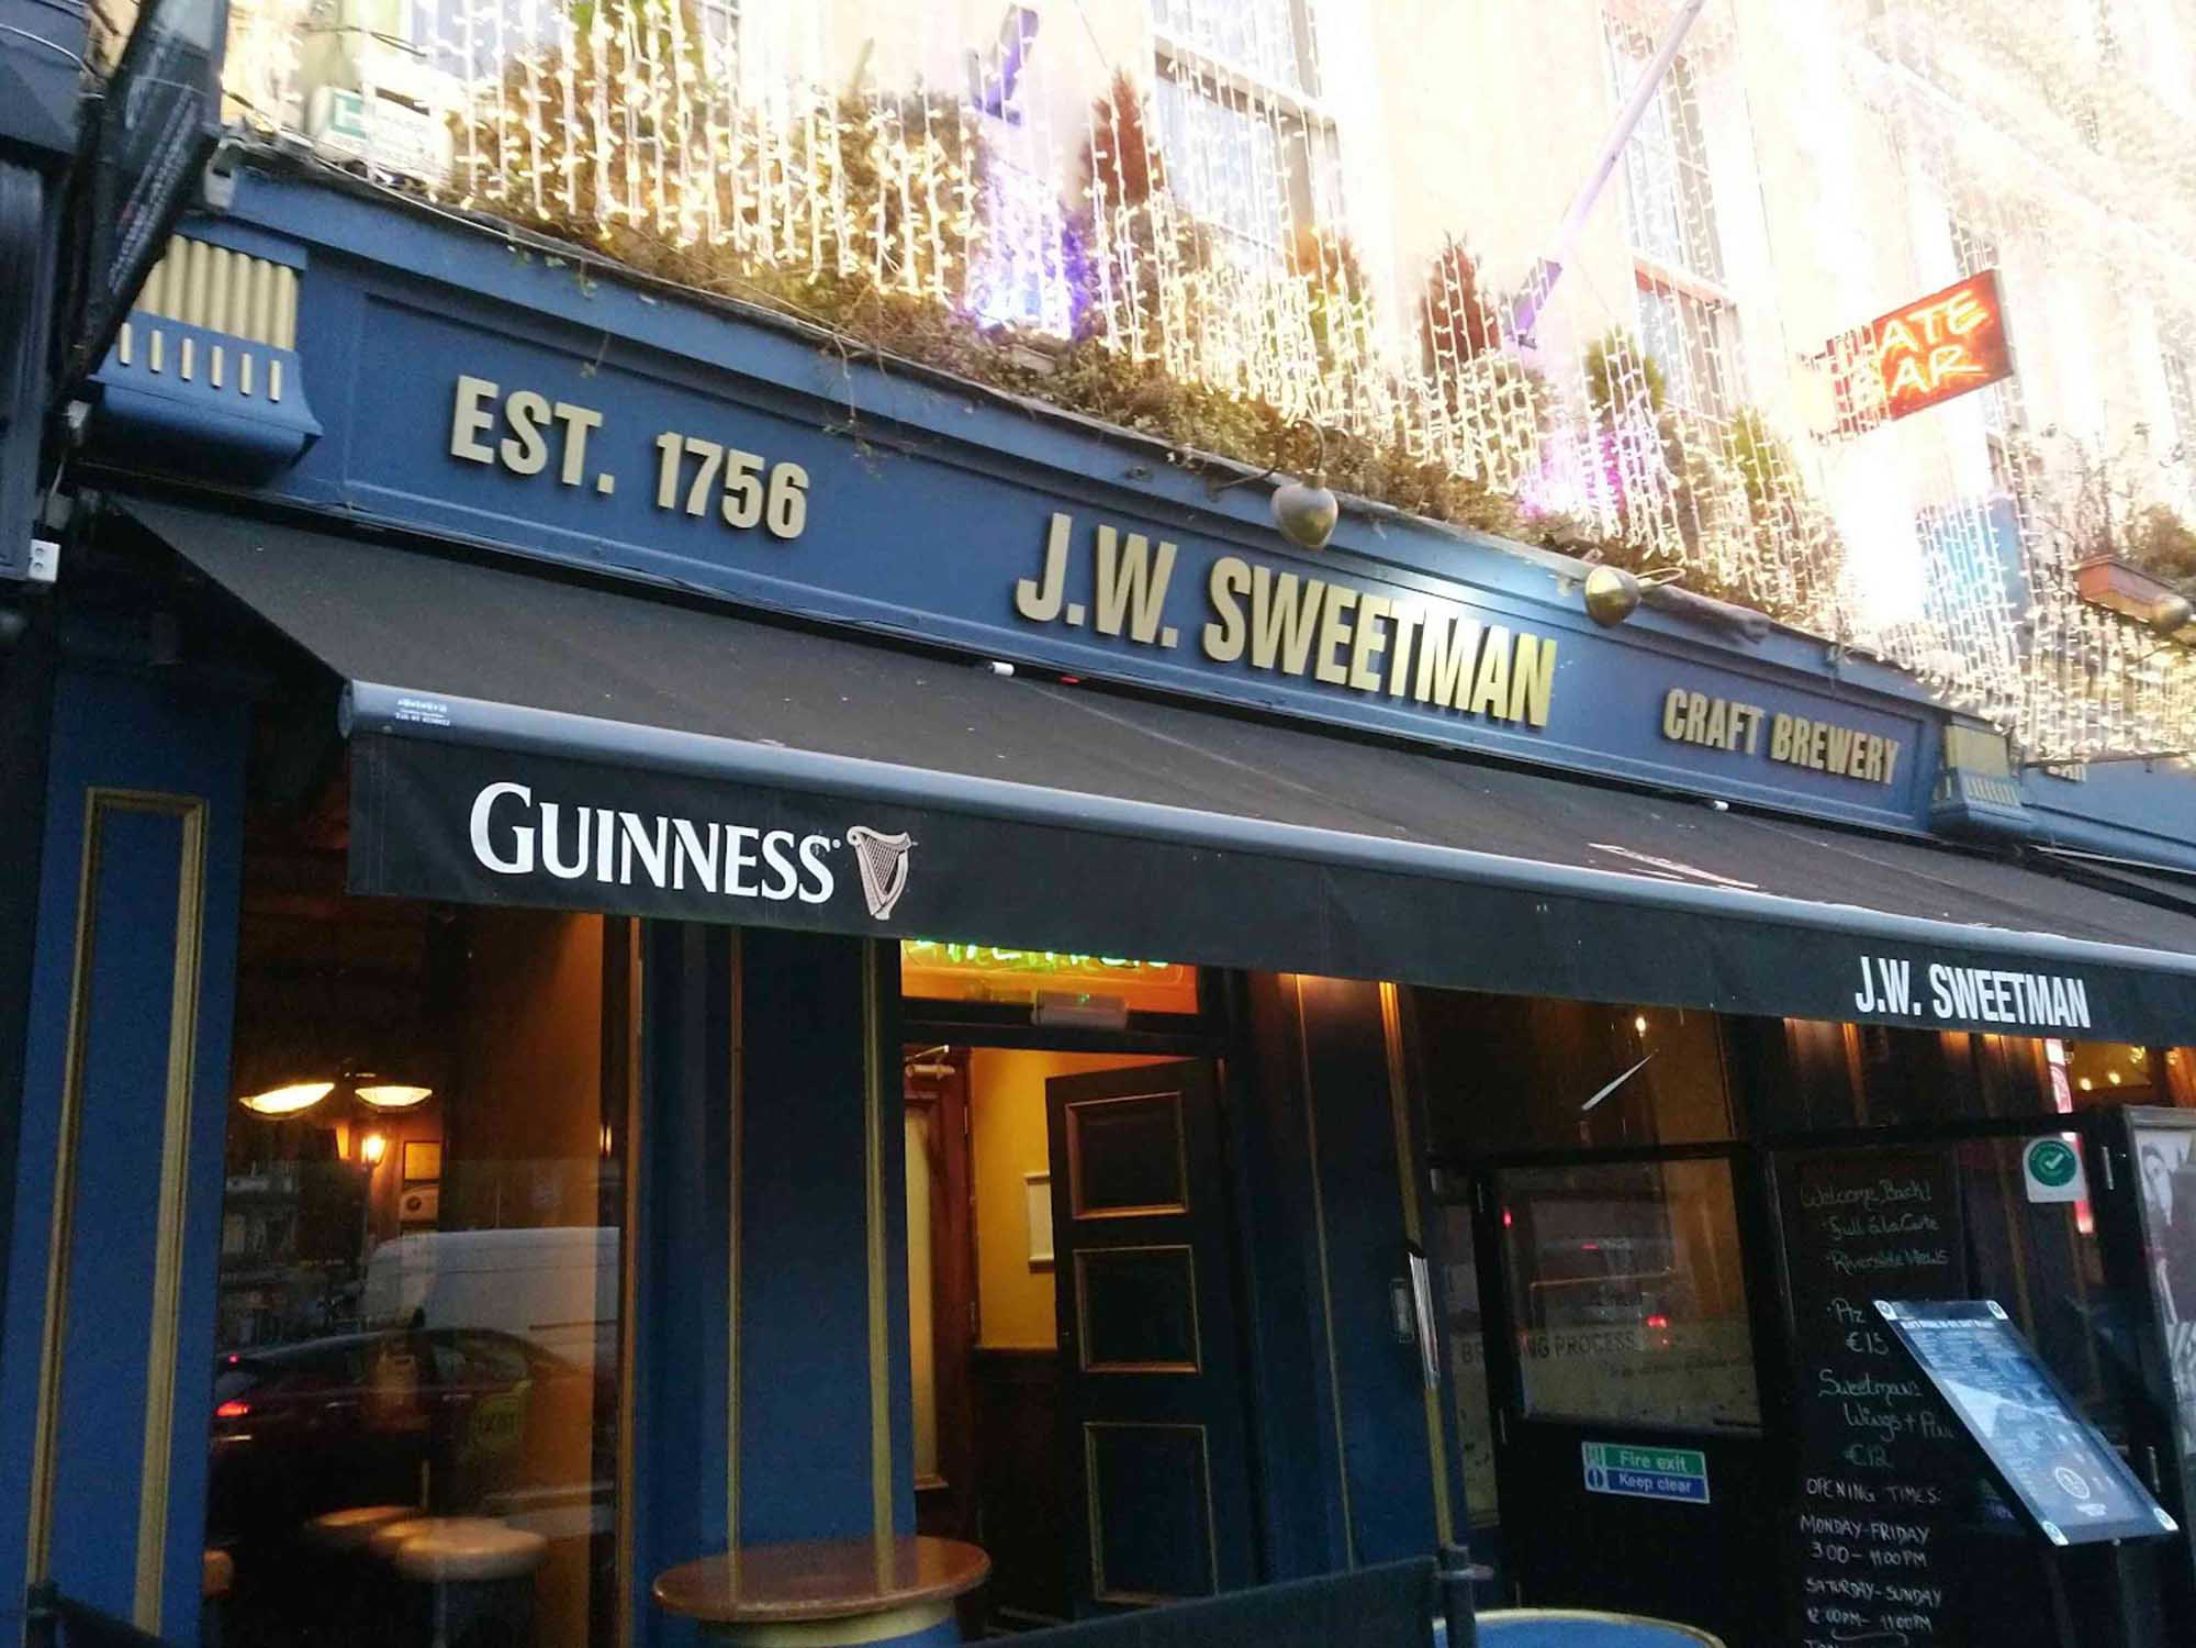 JW Sweetman - Best Bars in Dublin